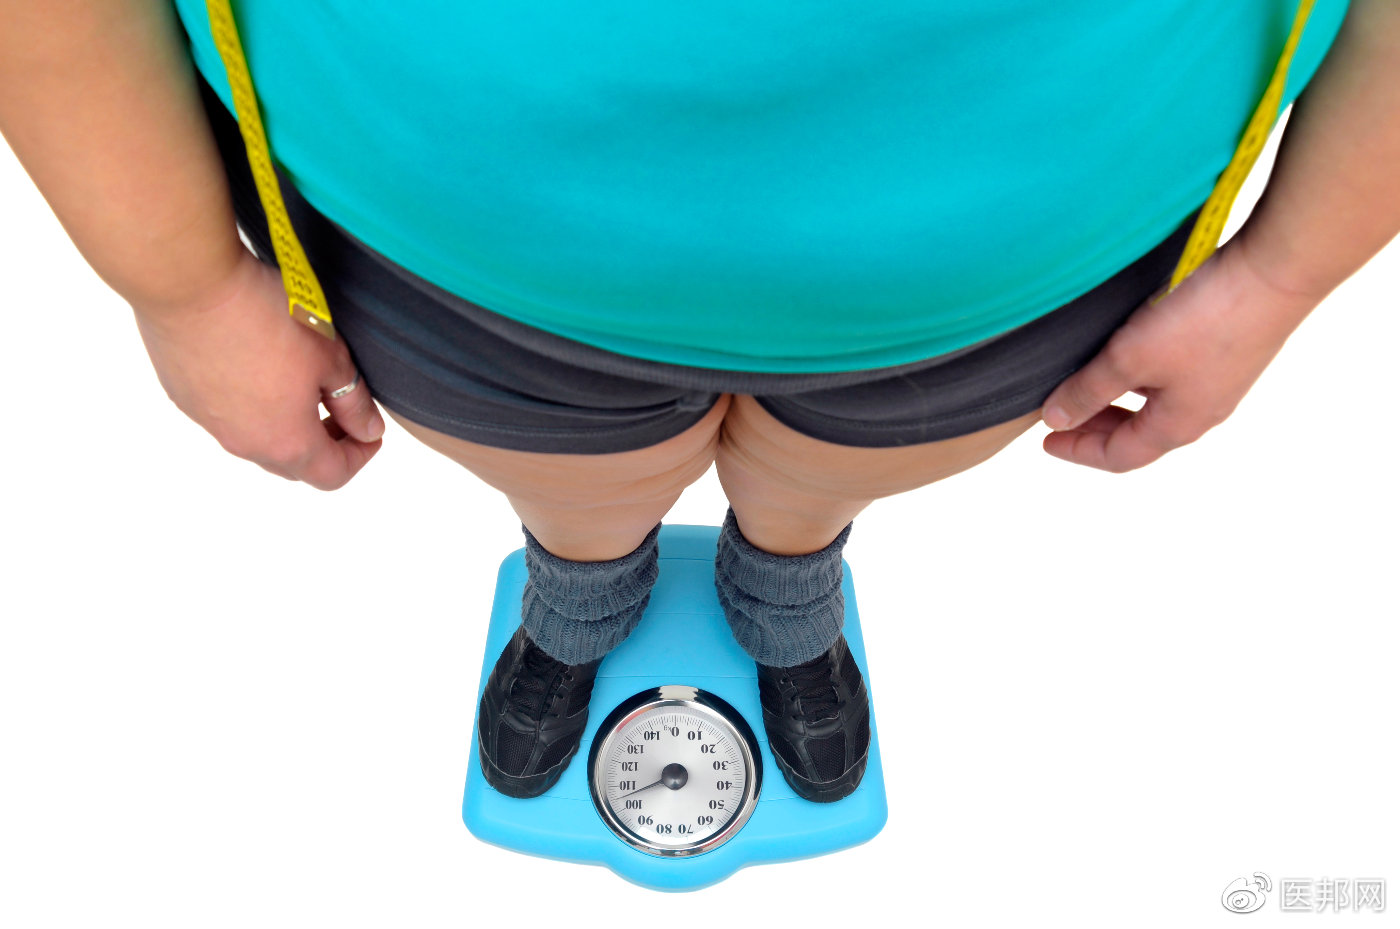 世界最胖男子590公斤重 - 国际 | 星洲网 Sin Chew Daily